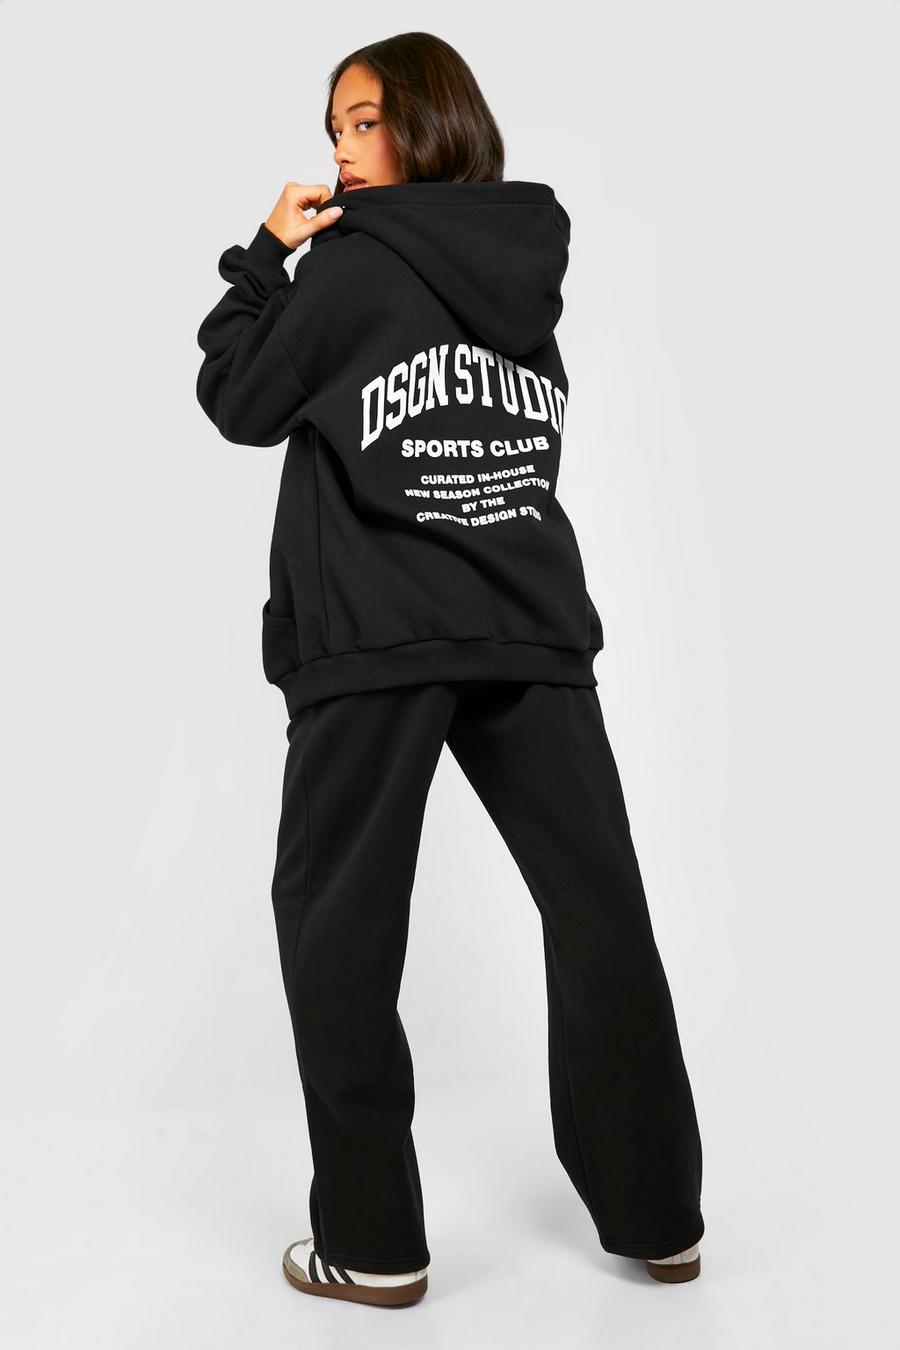 Trainingsanzug mit Dsgn Studio Sports Club Slogan und Reißverschluss, Black